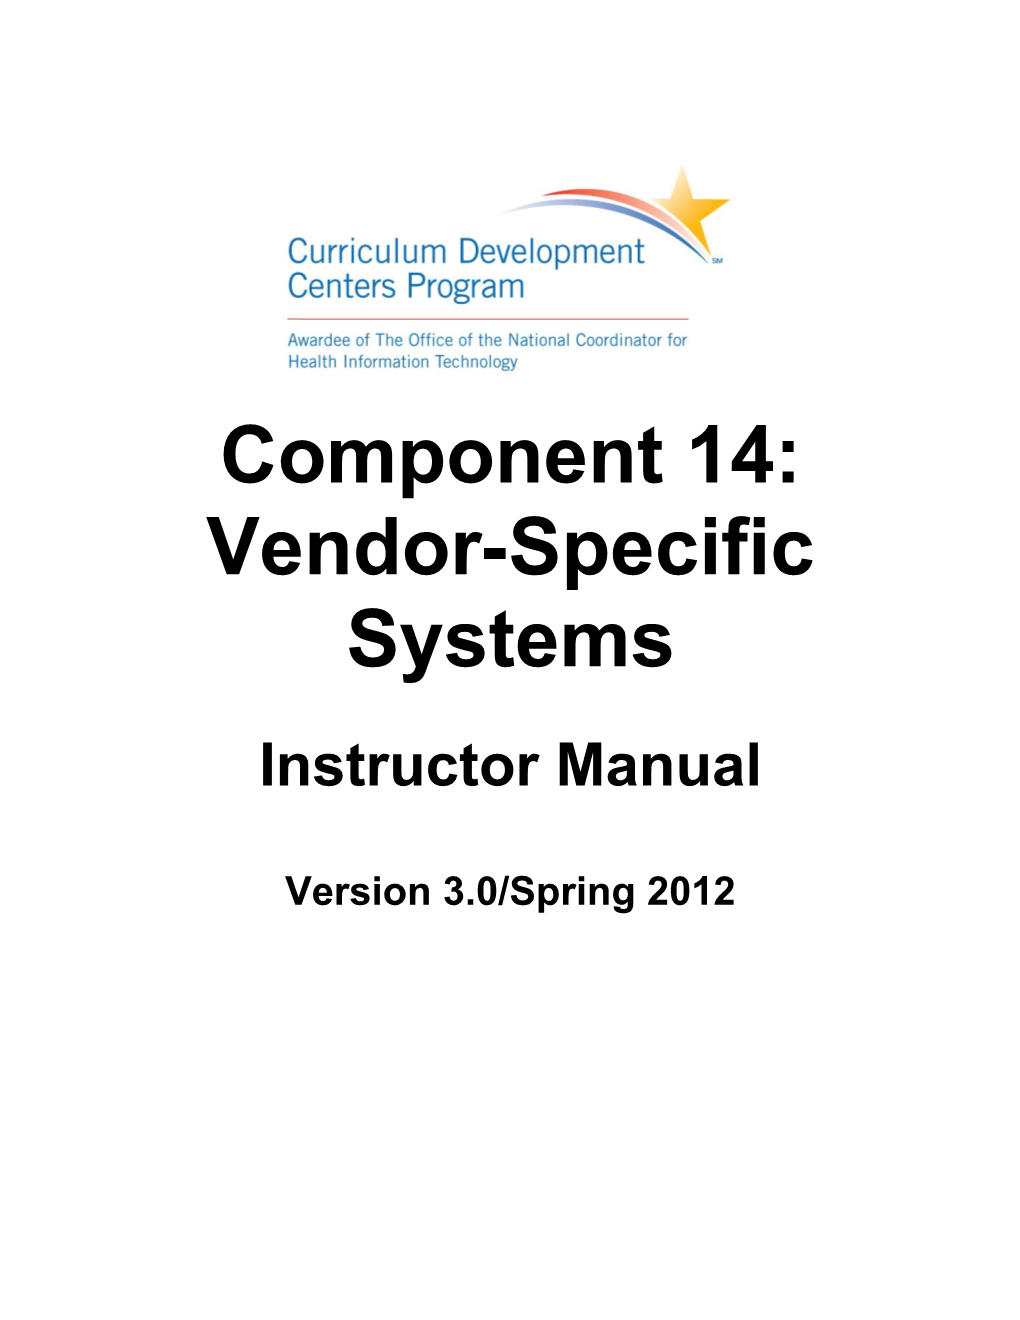 Vendor-Specific Systems